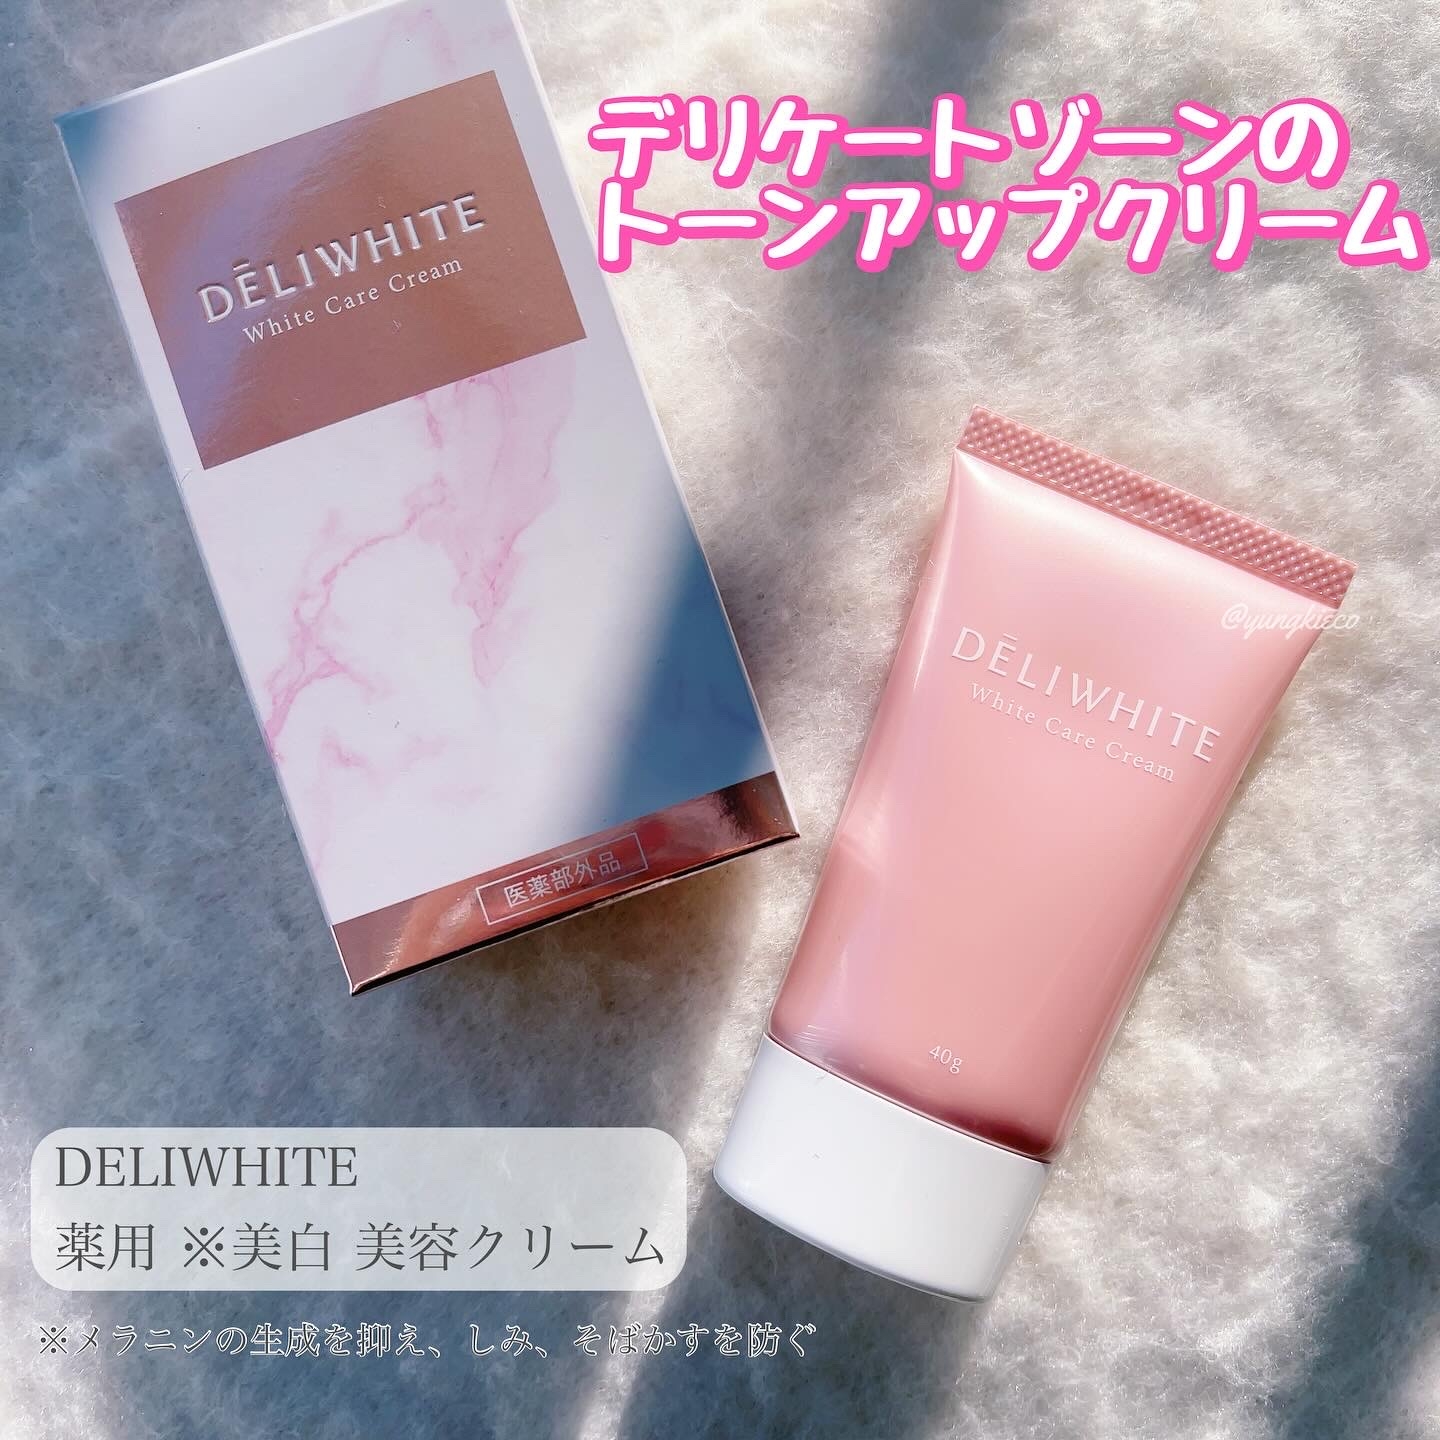 DELIWHITE(デリホワイト) 薬用ホワイトケアクリームの良い点・メリットに関するyungさんの口コミ画像1